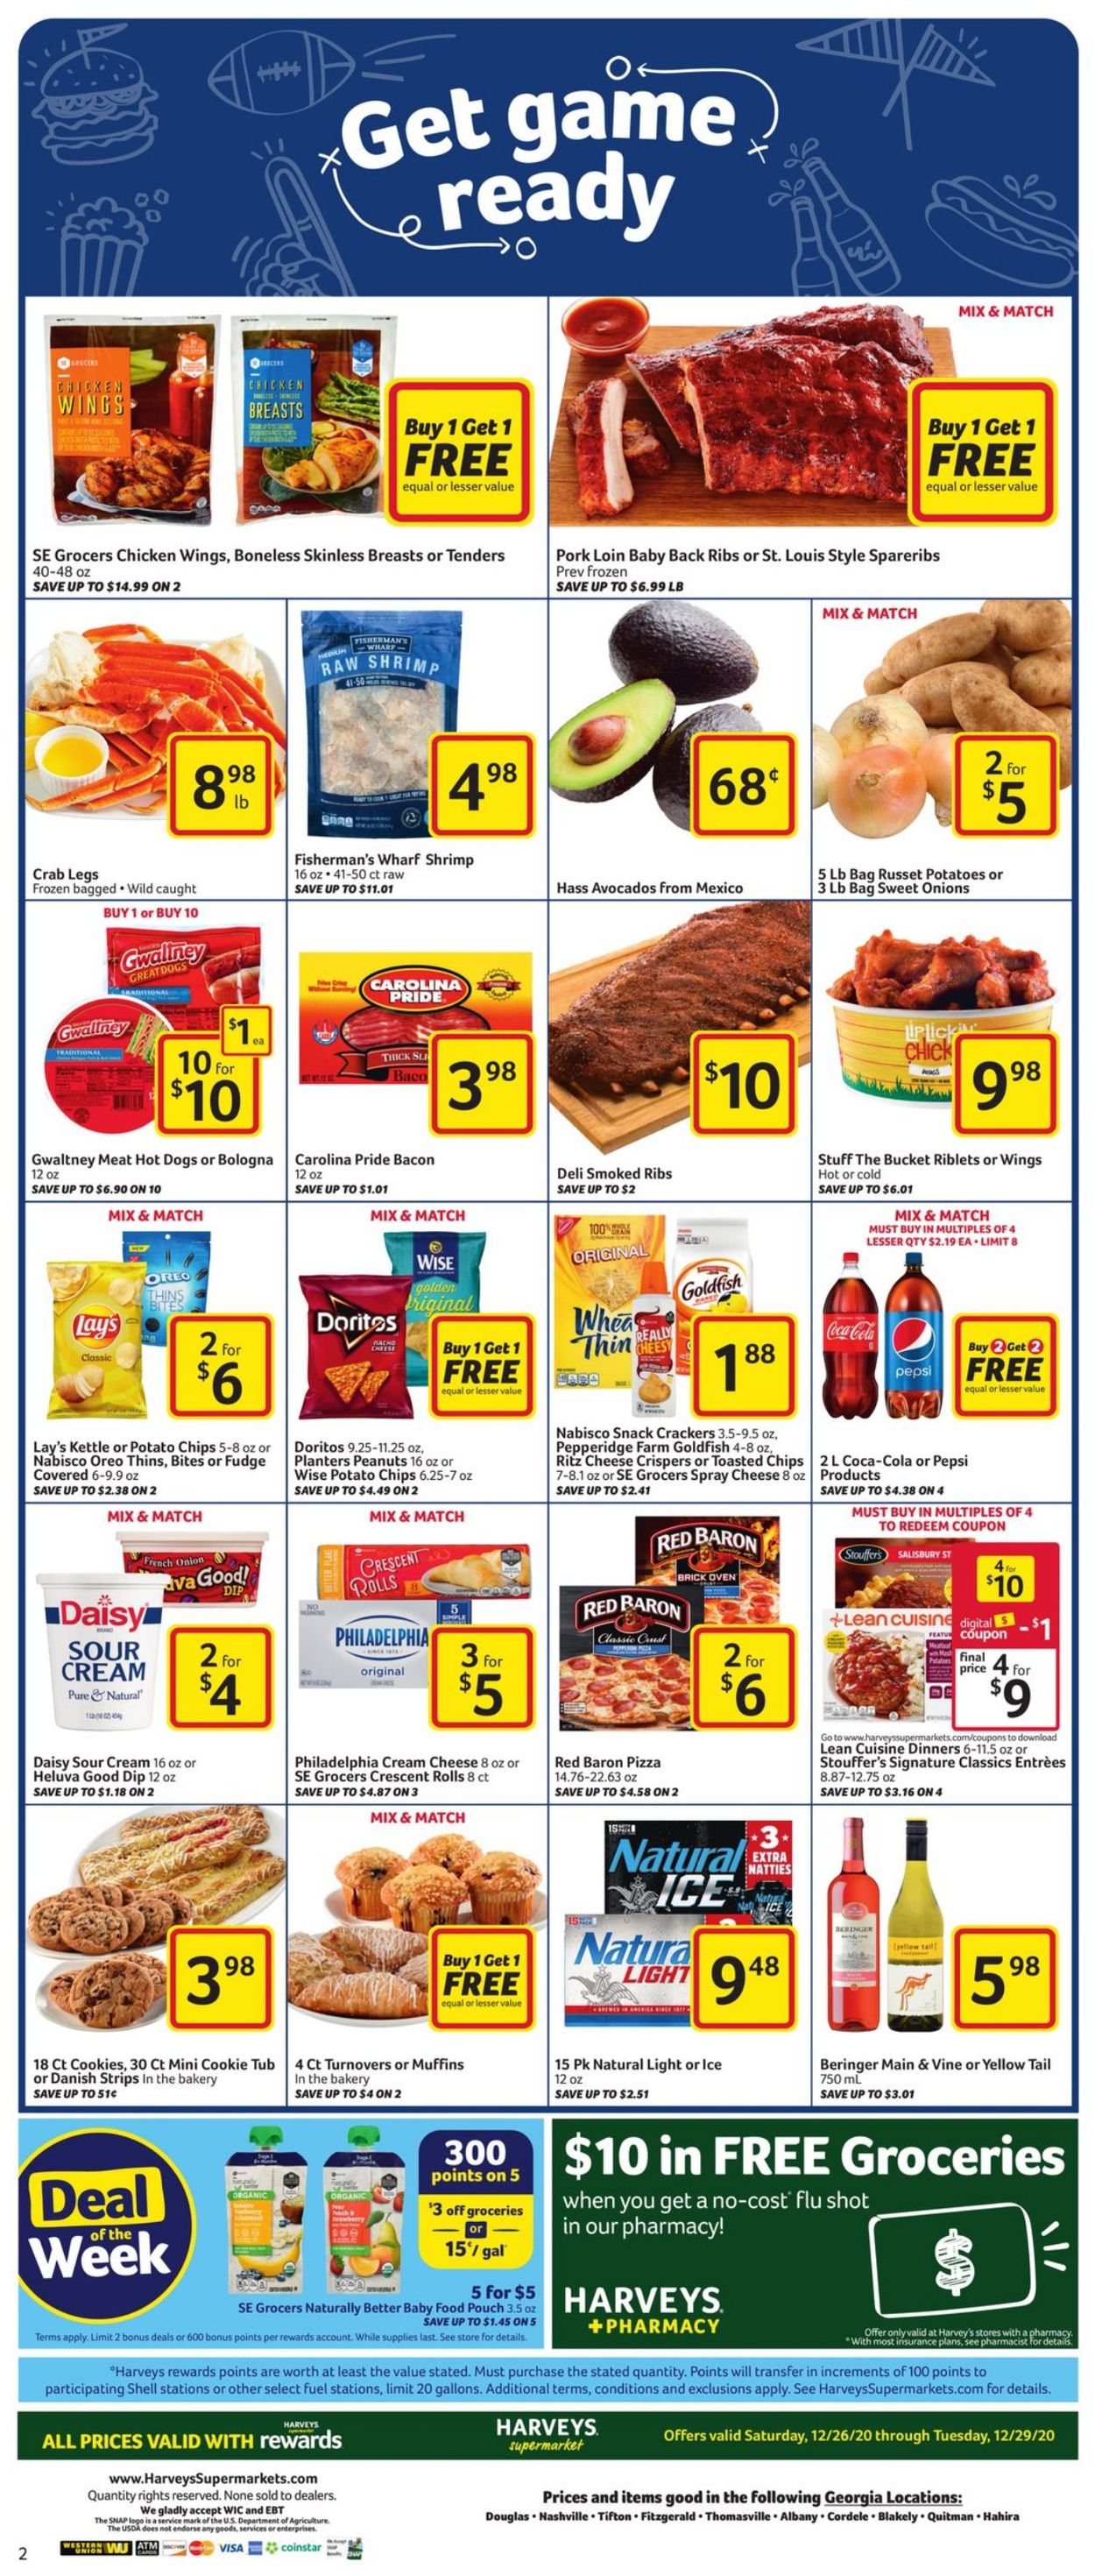 Catalogue Harveys Supermarket from 12/26/2020